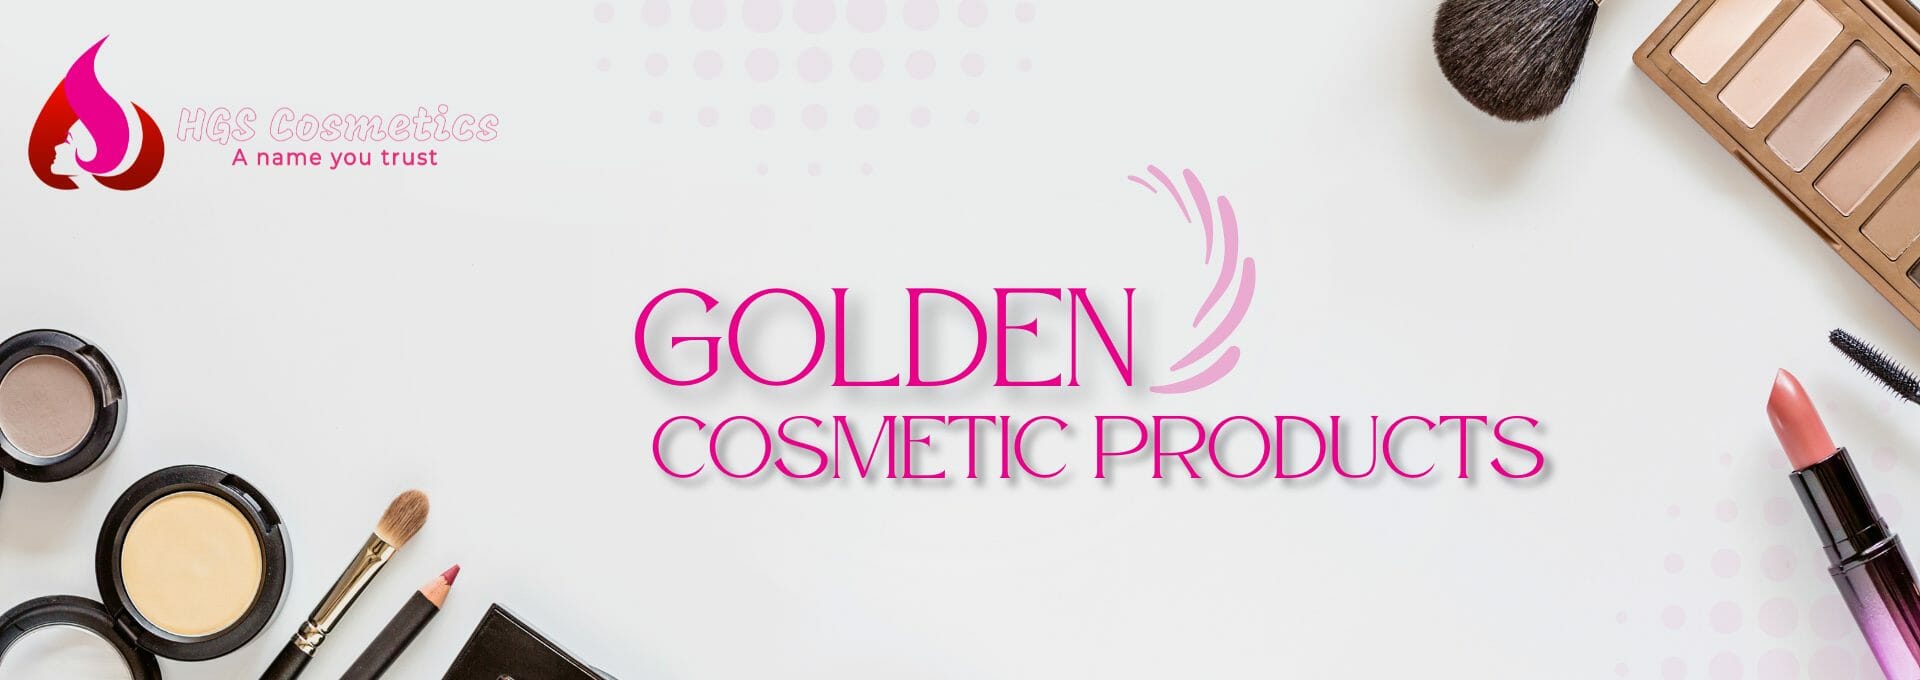 Buy Original Golden Products Online in Pakistan @ HGS Cosmetics